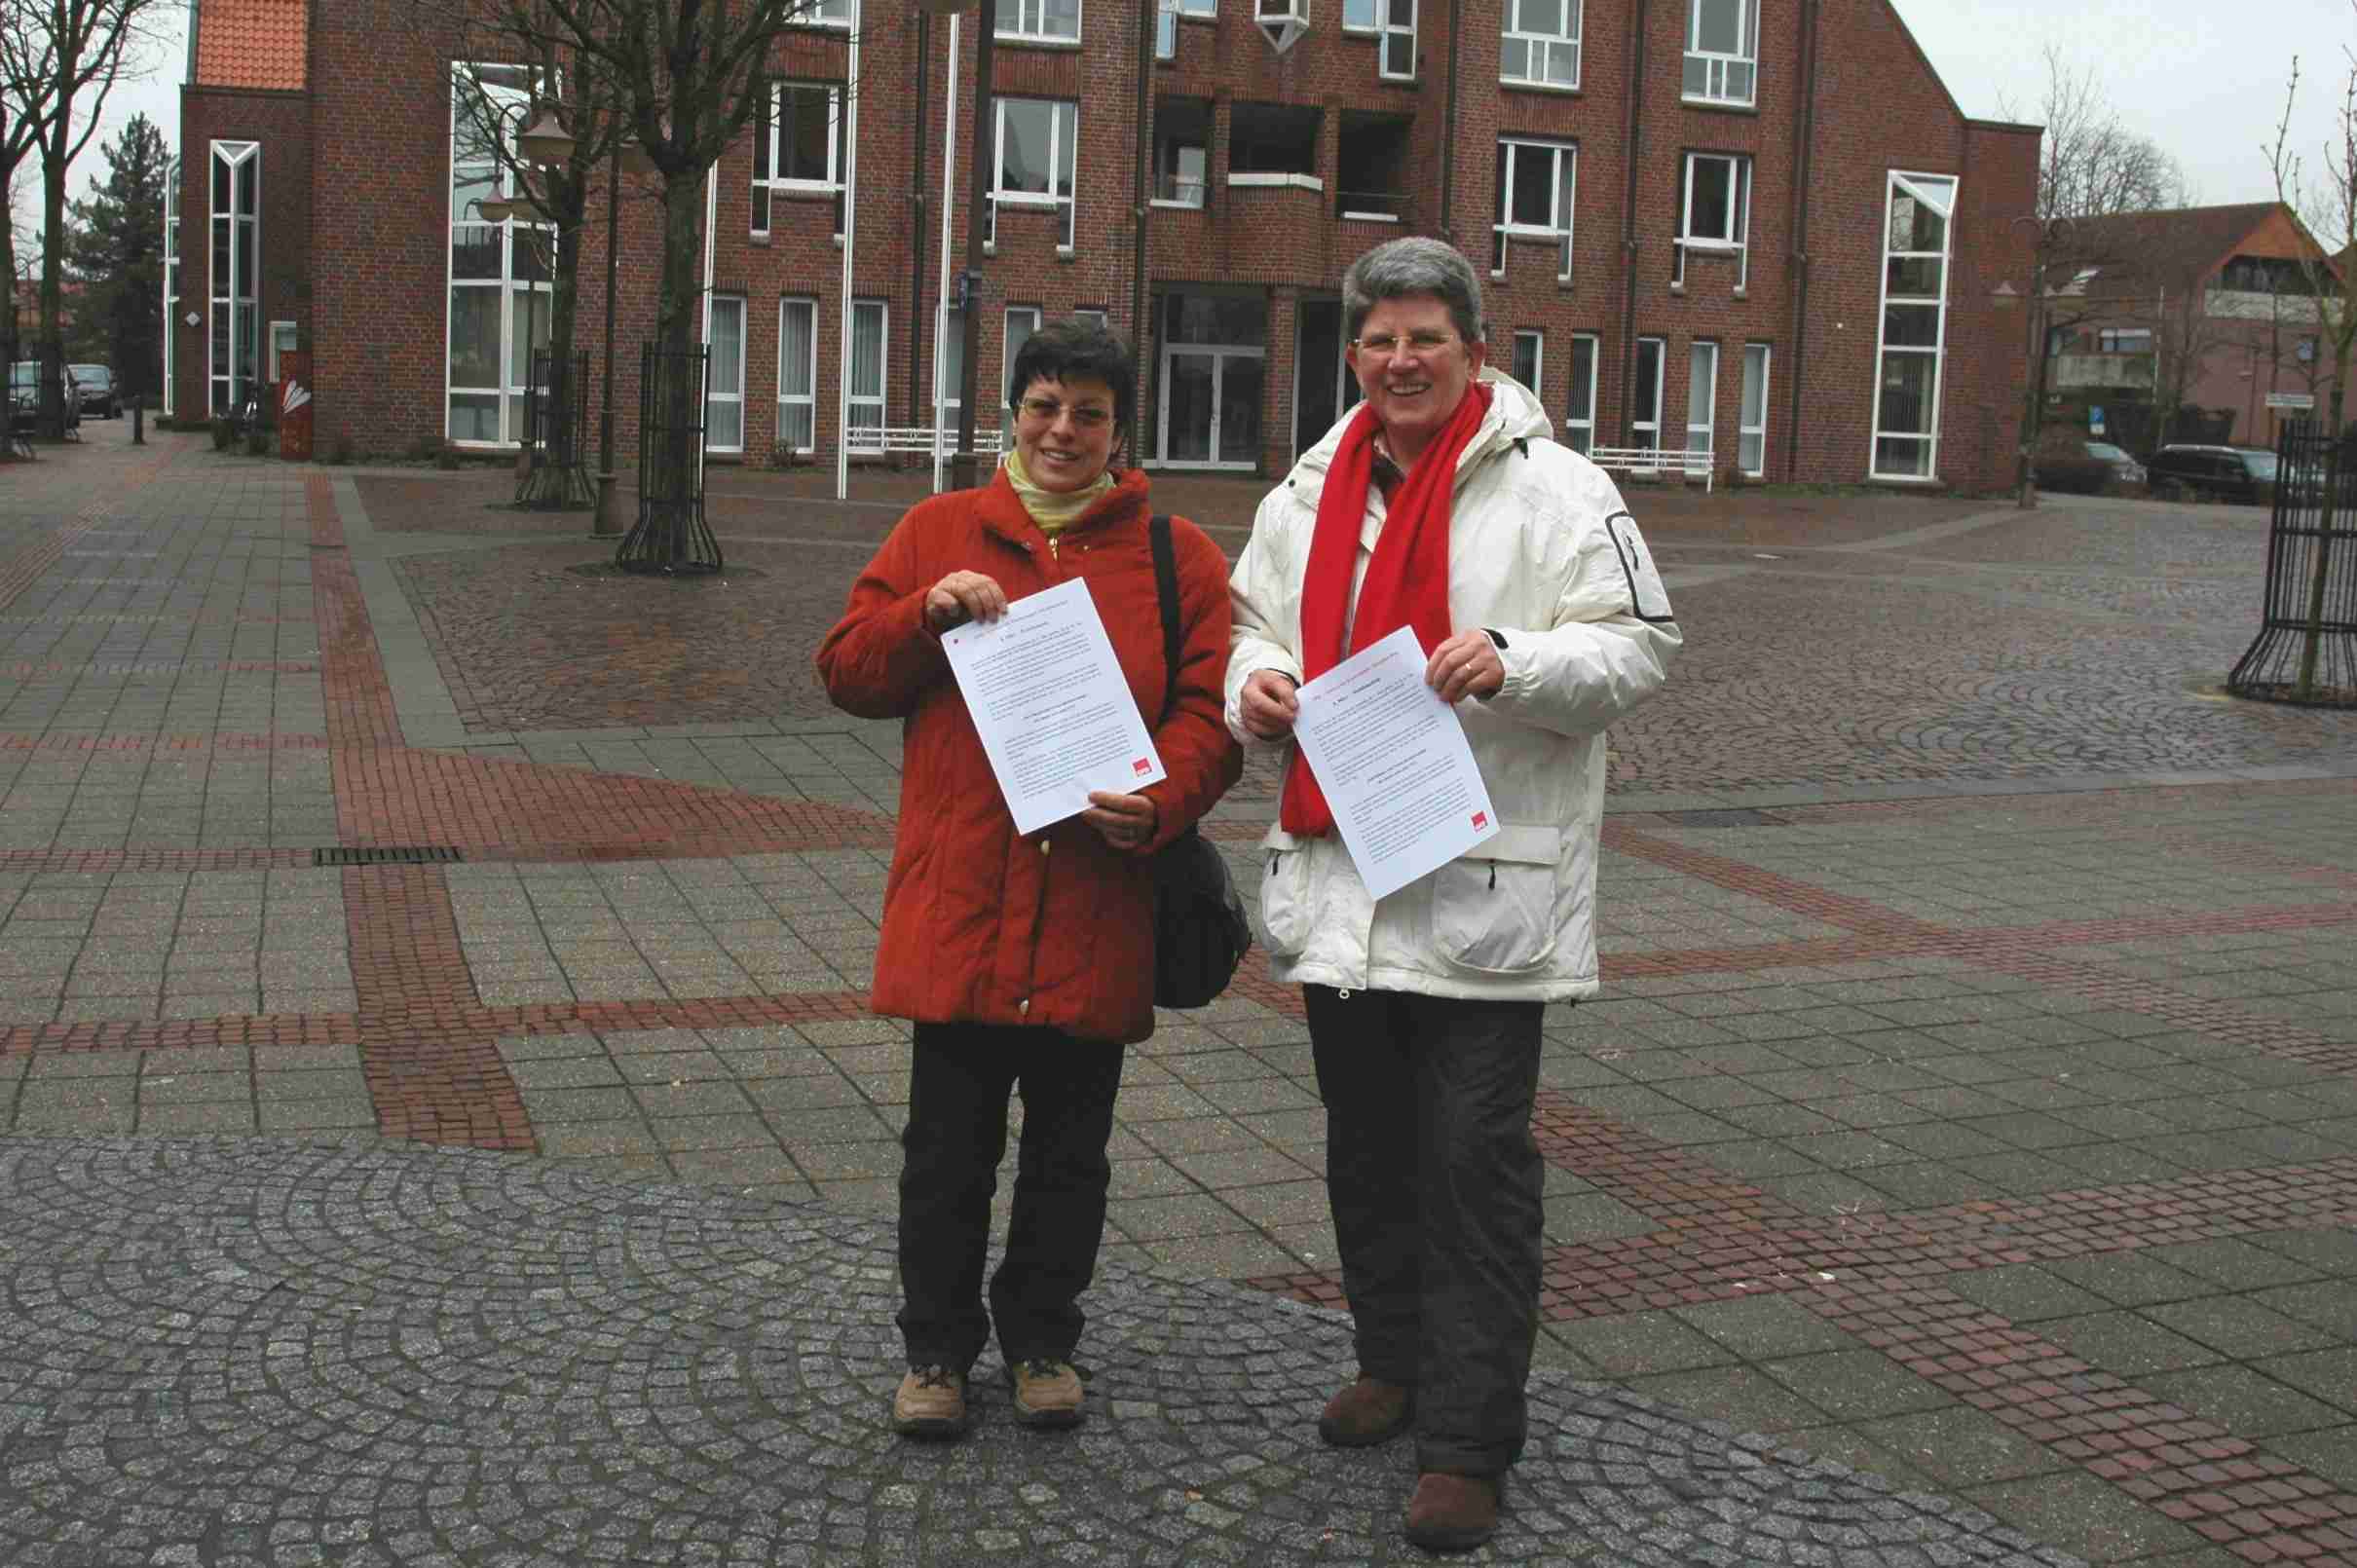 Kreistagsmitglied Gundi Grabenmeier (r.) und Helga Trümper Wolk, die als ihre Stellvertreterin für die nächste Wahlperiode nominiert wurde, haben für den Weltfrauentag ein Flugblatt entworfen, das sie am 06. März auf dem Wochenmarkt verteilen werden.